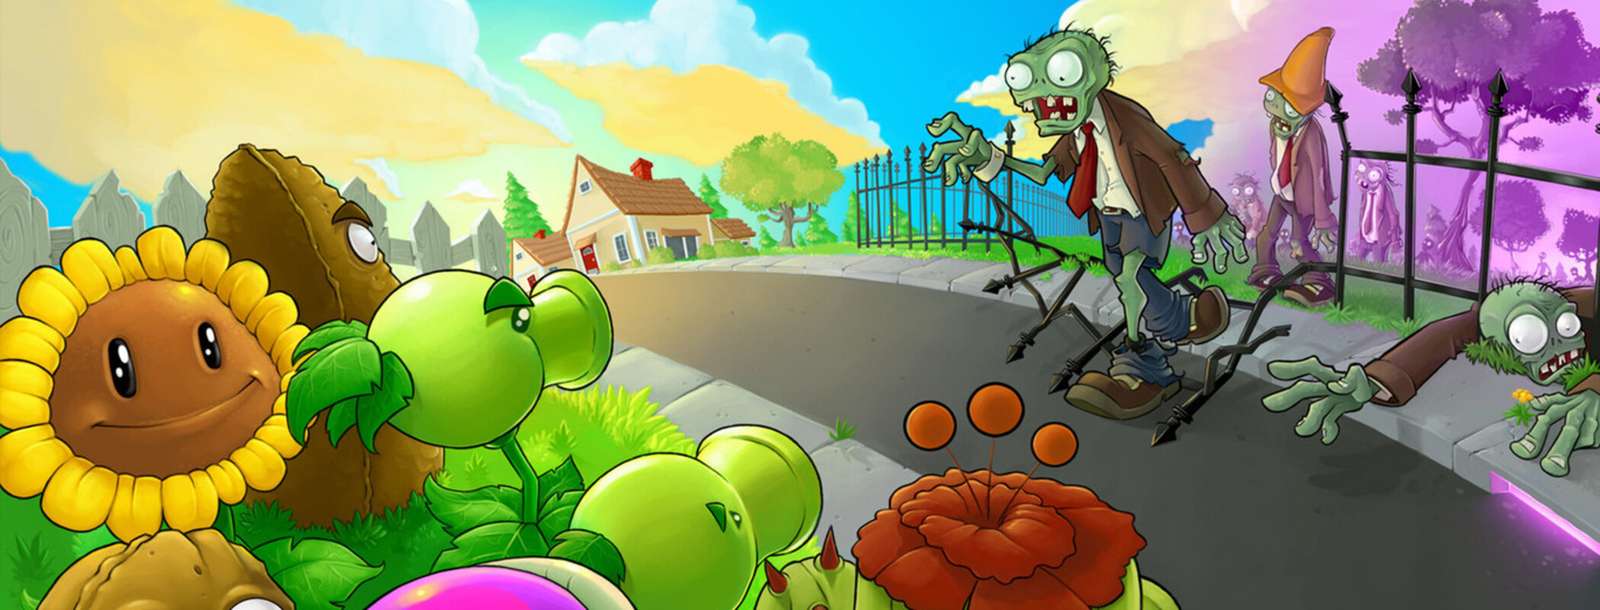 растения против Зомби пазл онлайн из фото